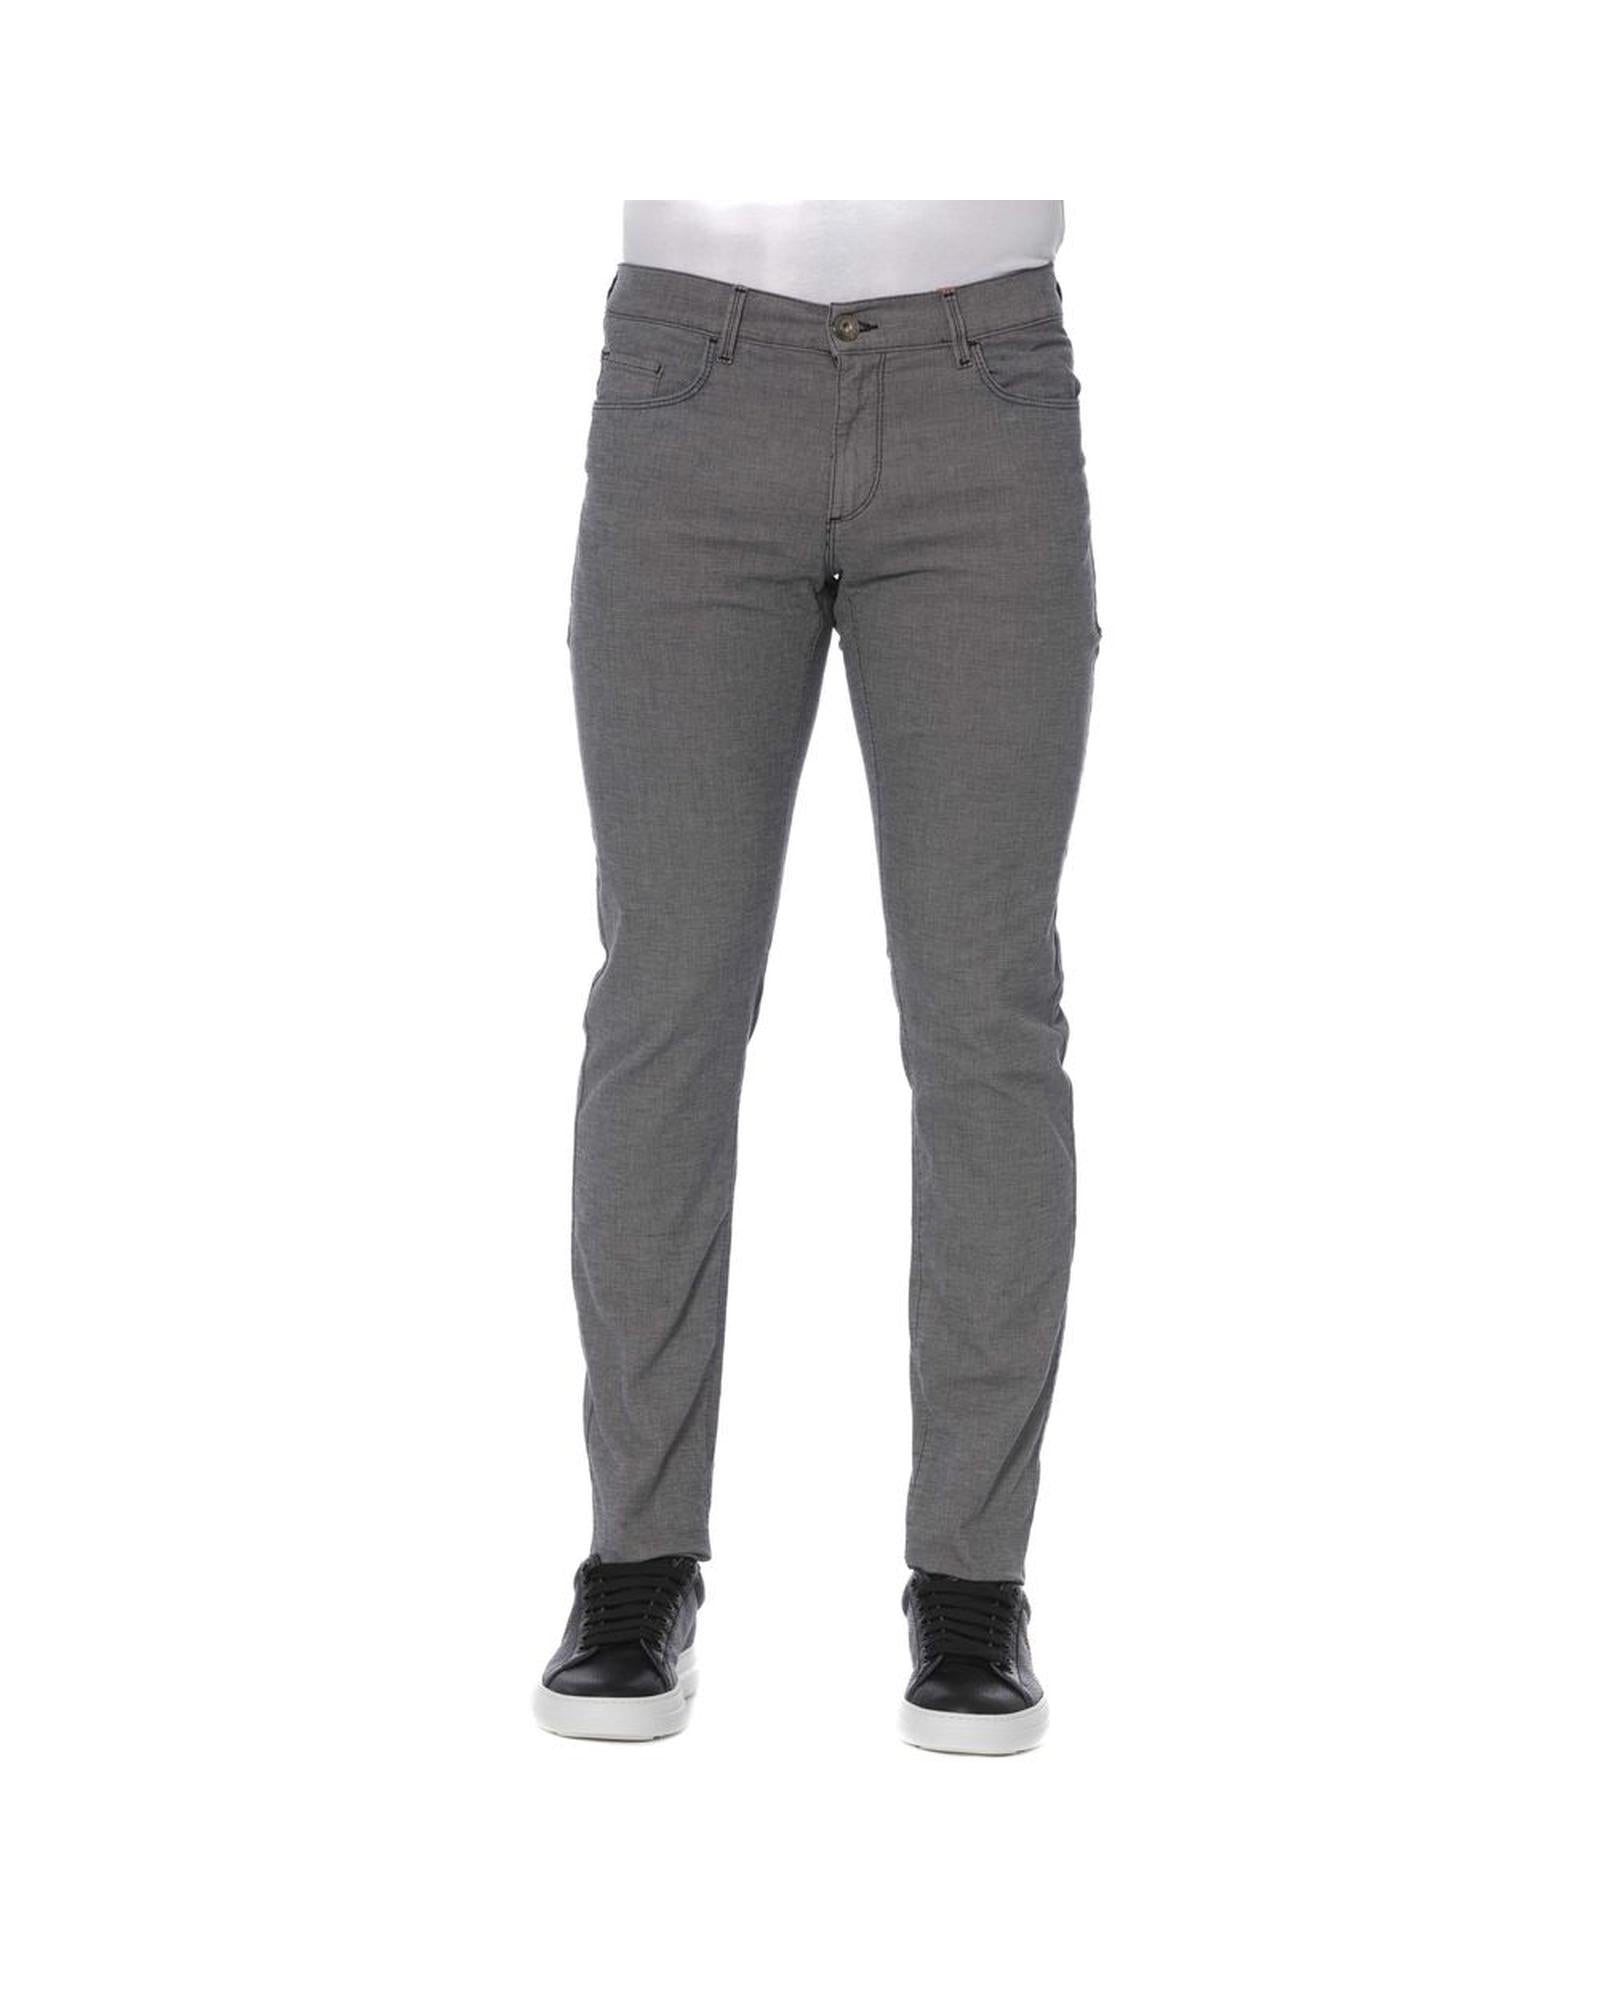 Men's Gray Cotton Jeans & Pant - W40 US